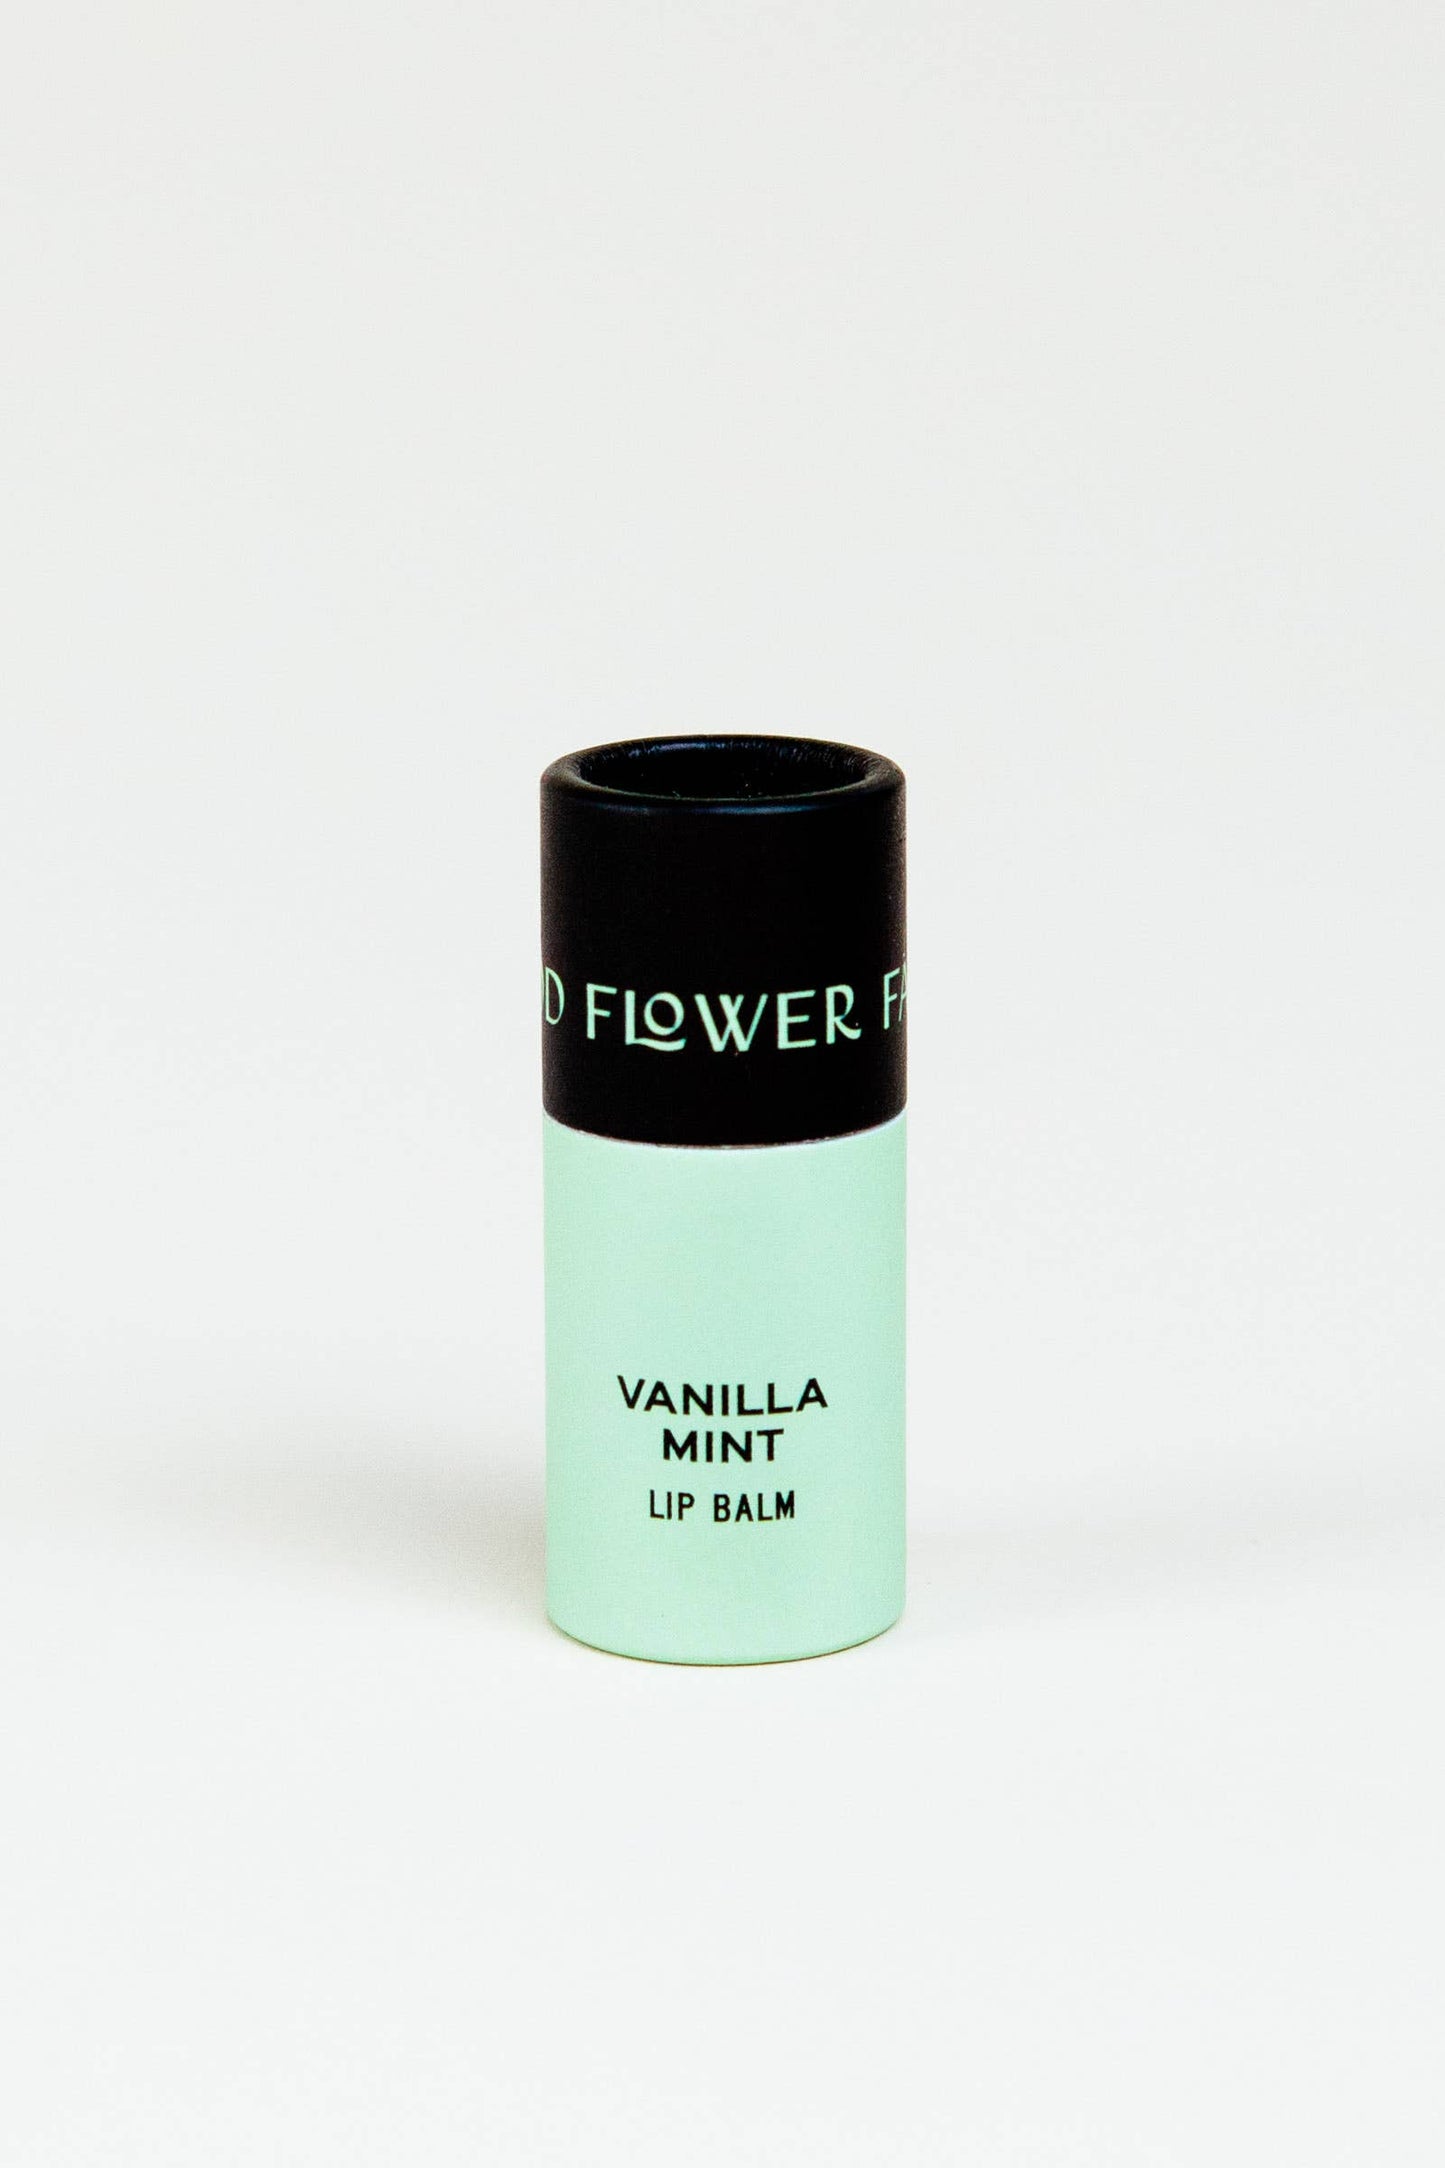 Vanilla Mint Lip Balm / 0.3 oz Biodegradable Tube